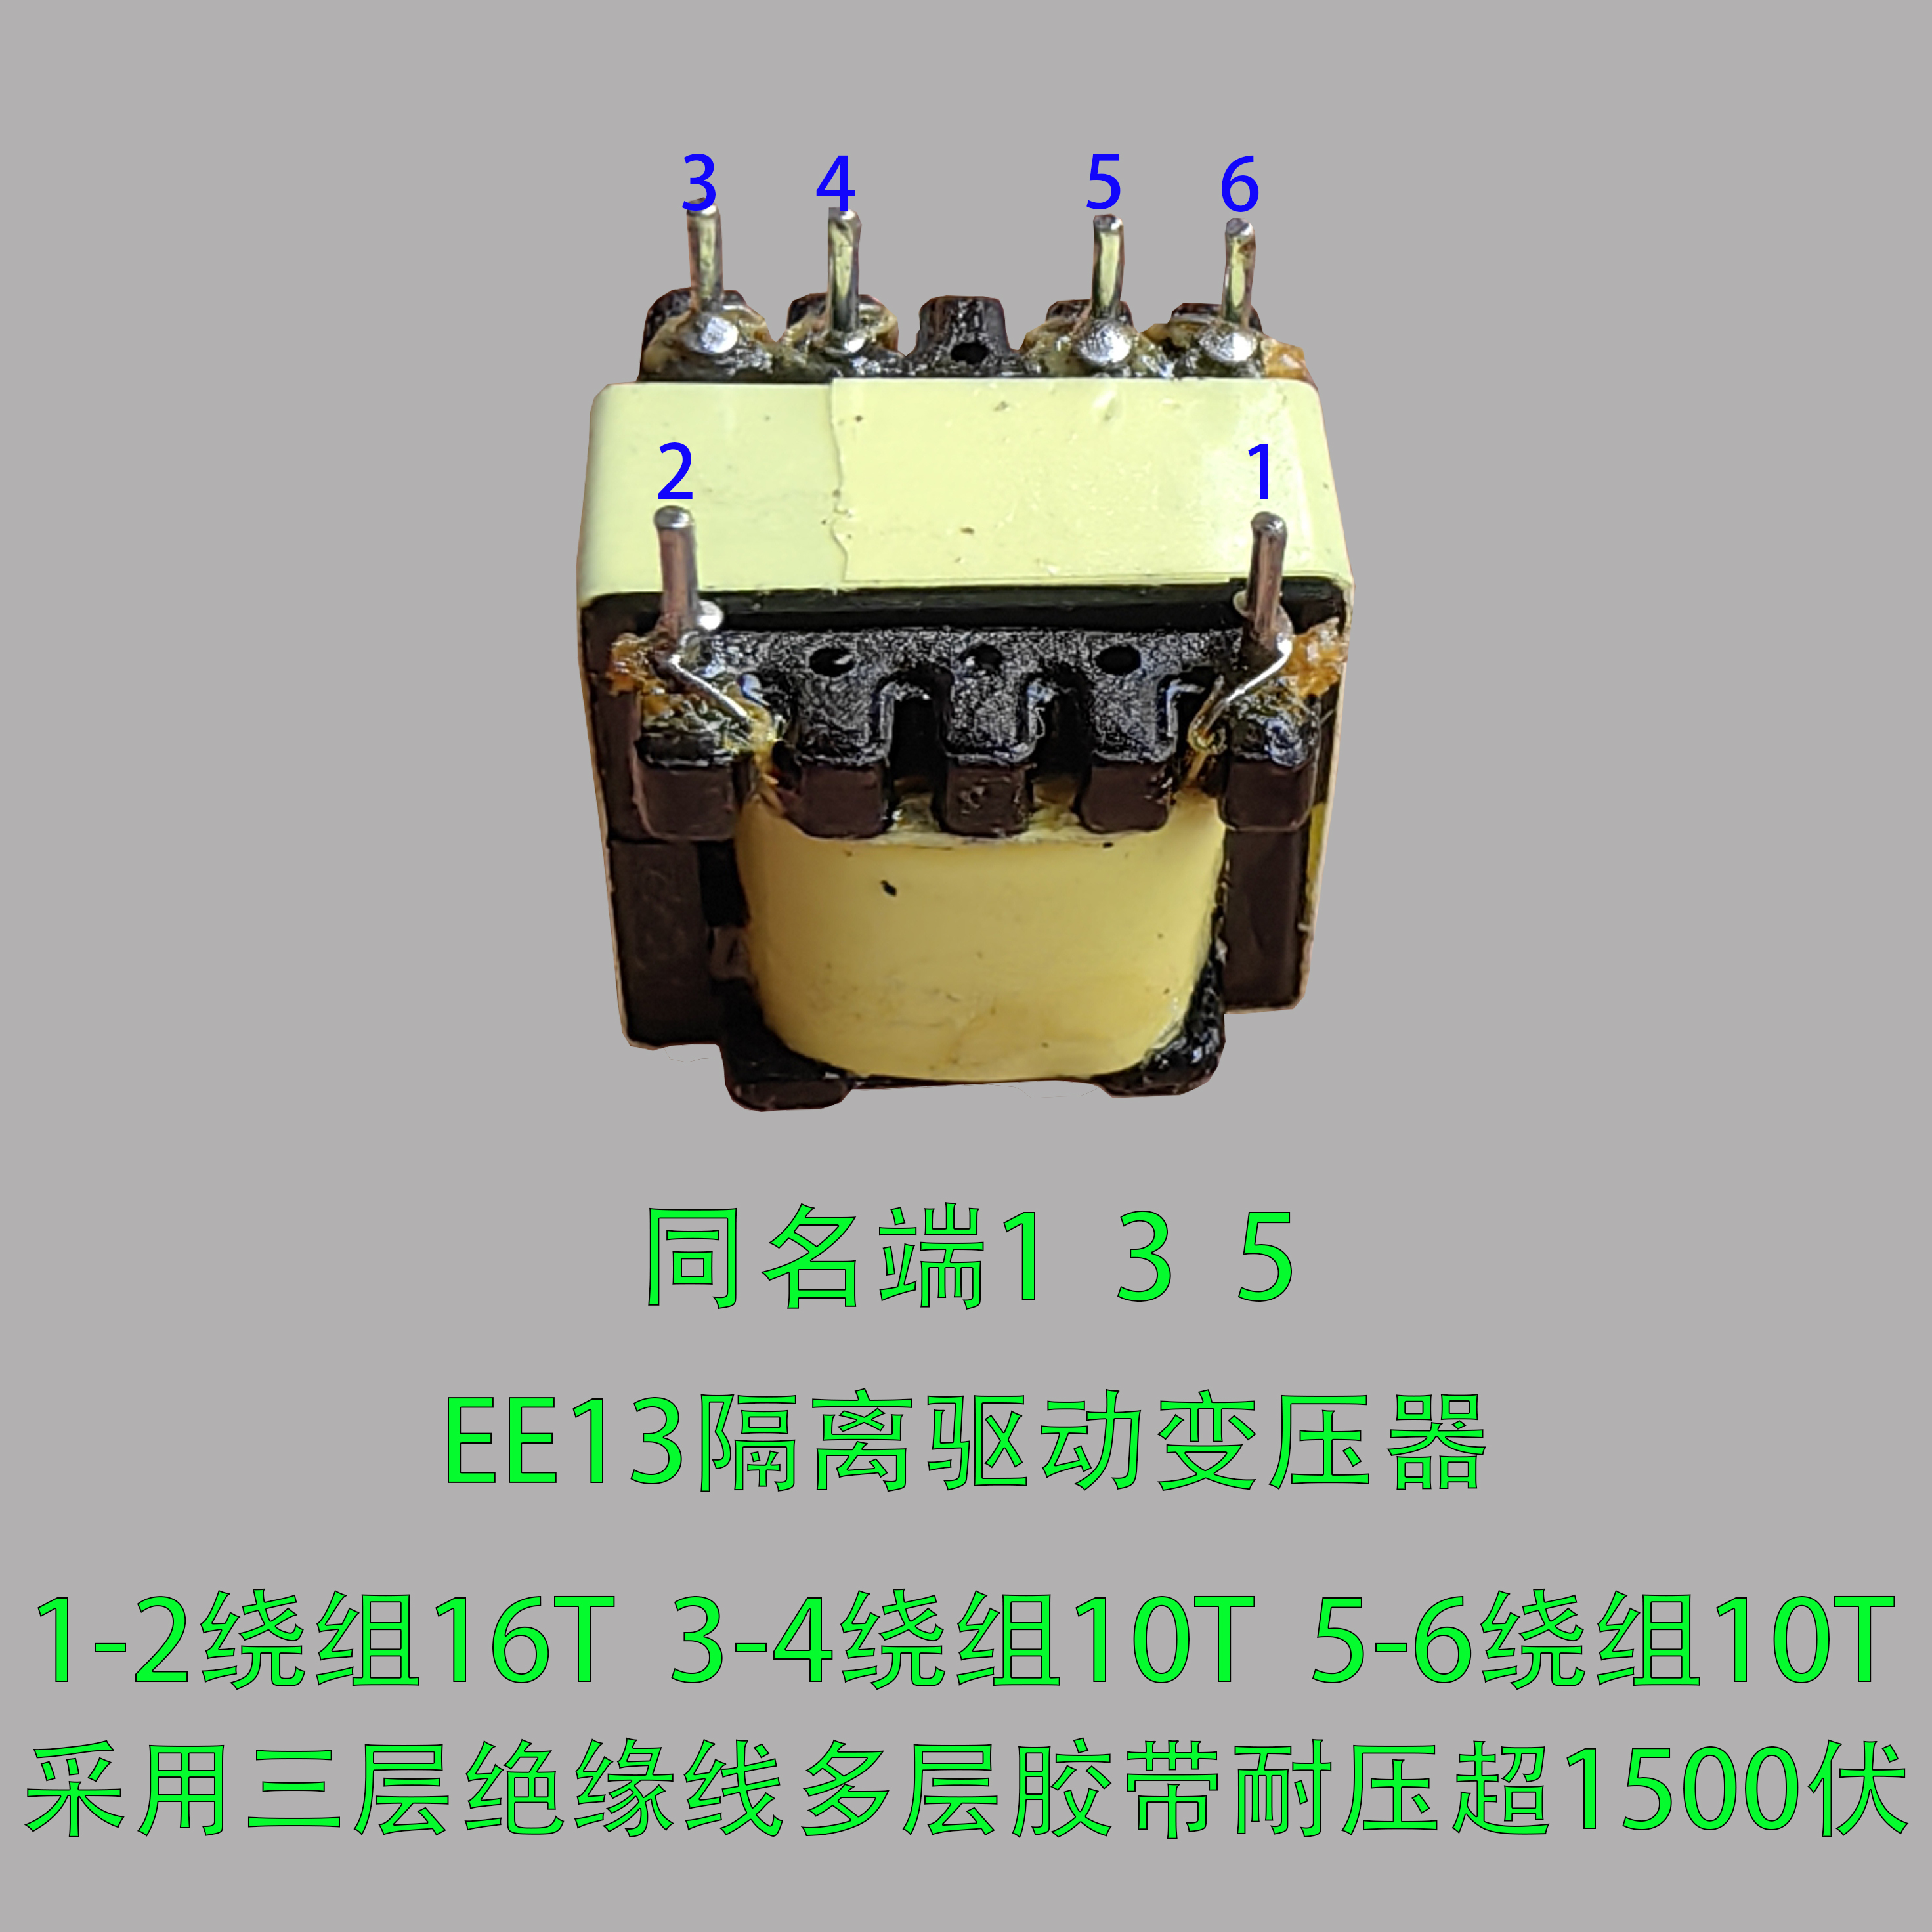 EE13可控硅驱动隔离变压器16:10:10逆变器后级驱动变压器